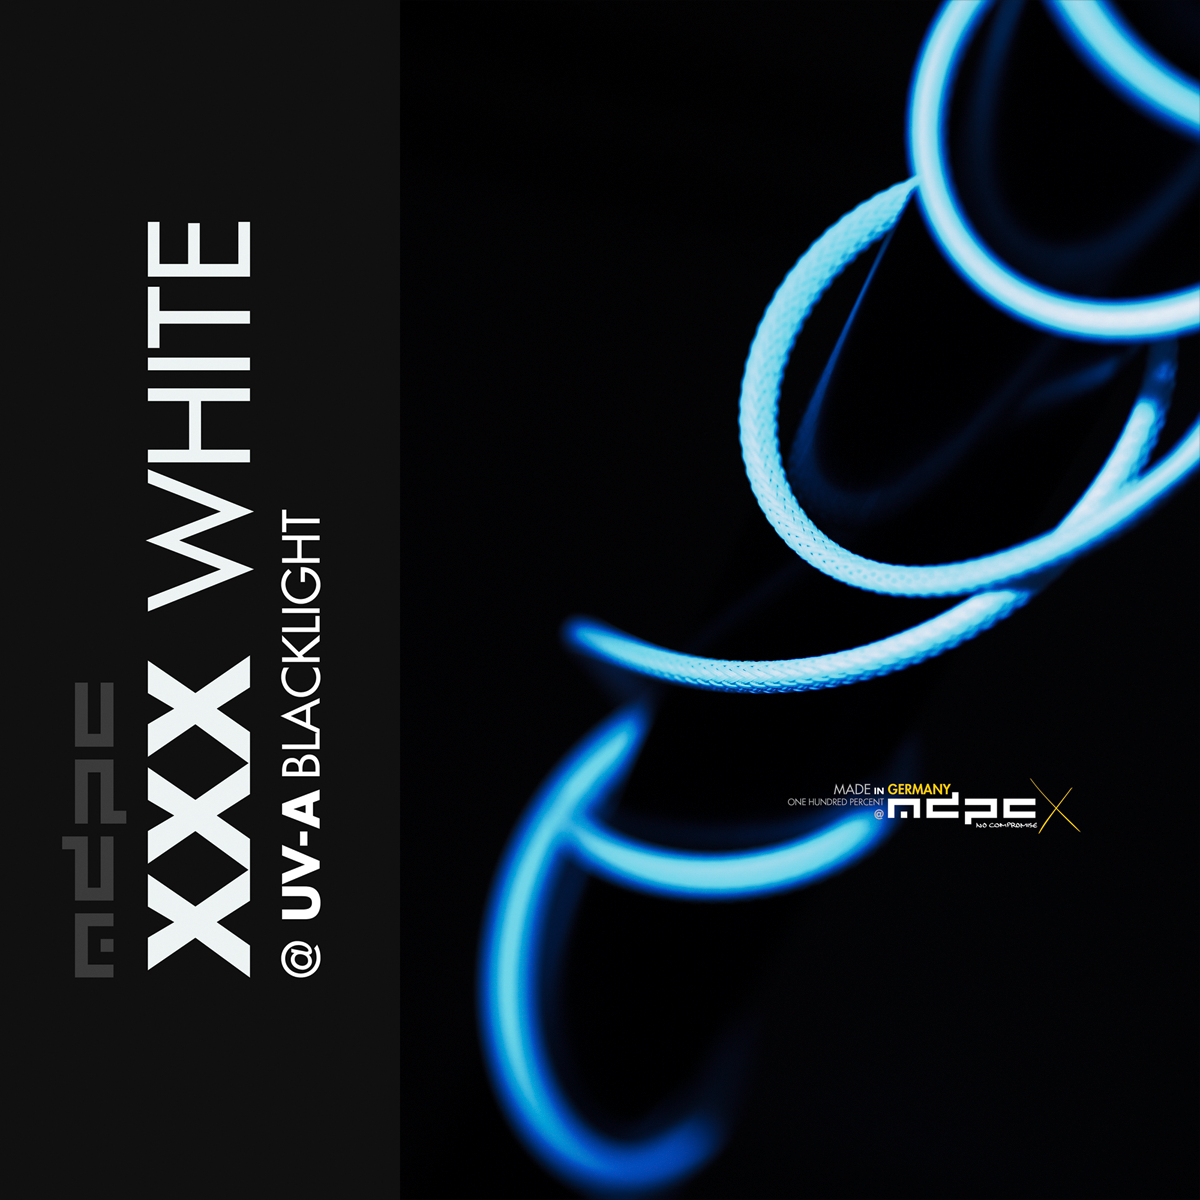 MDPC-X XXX White Small